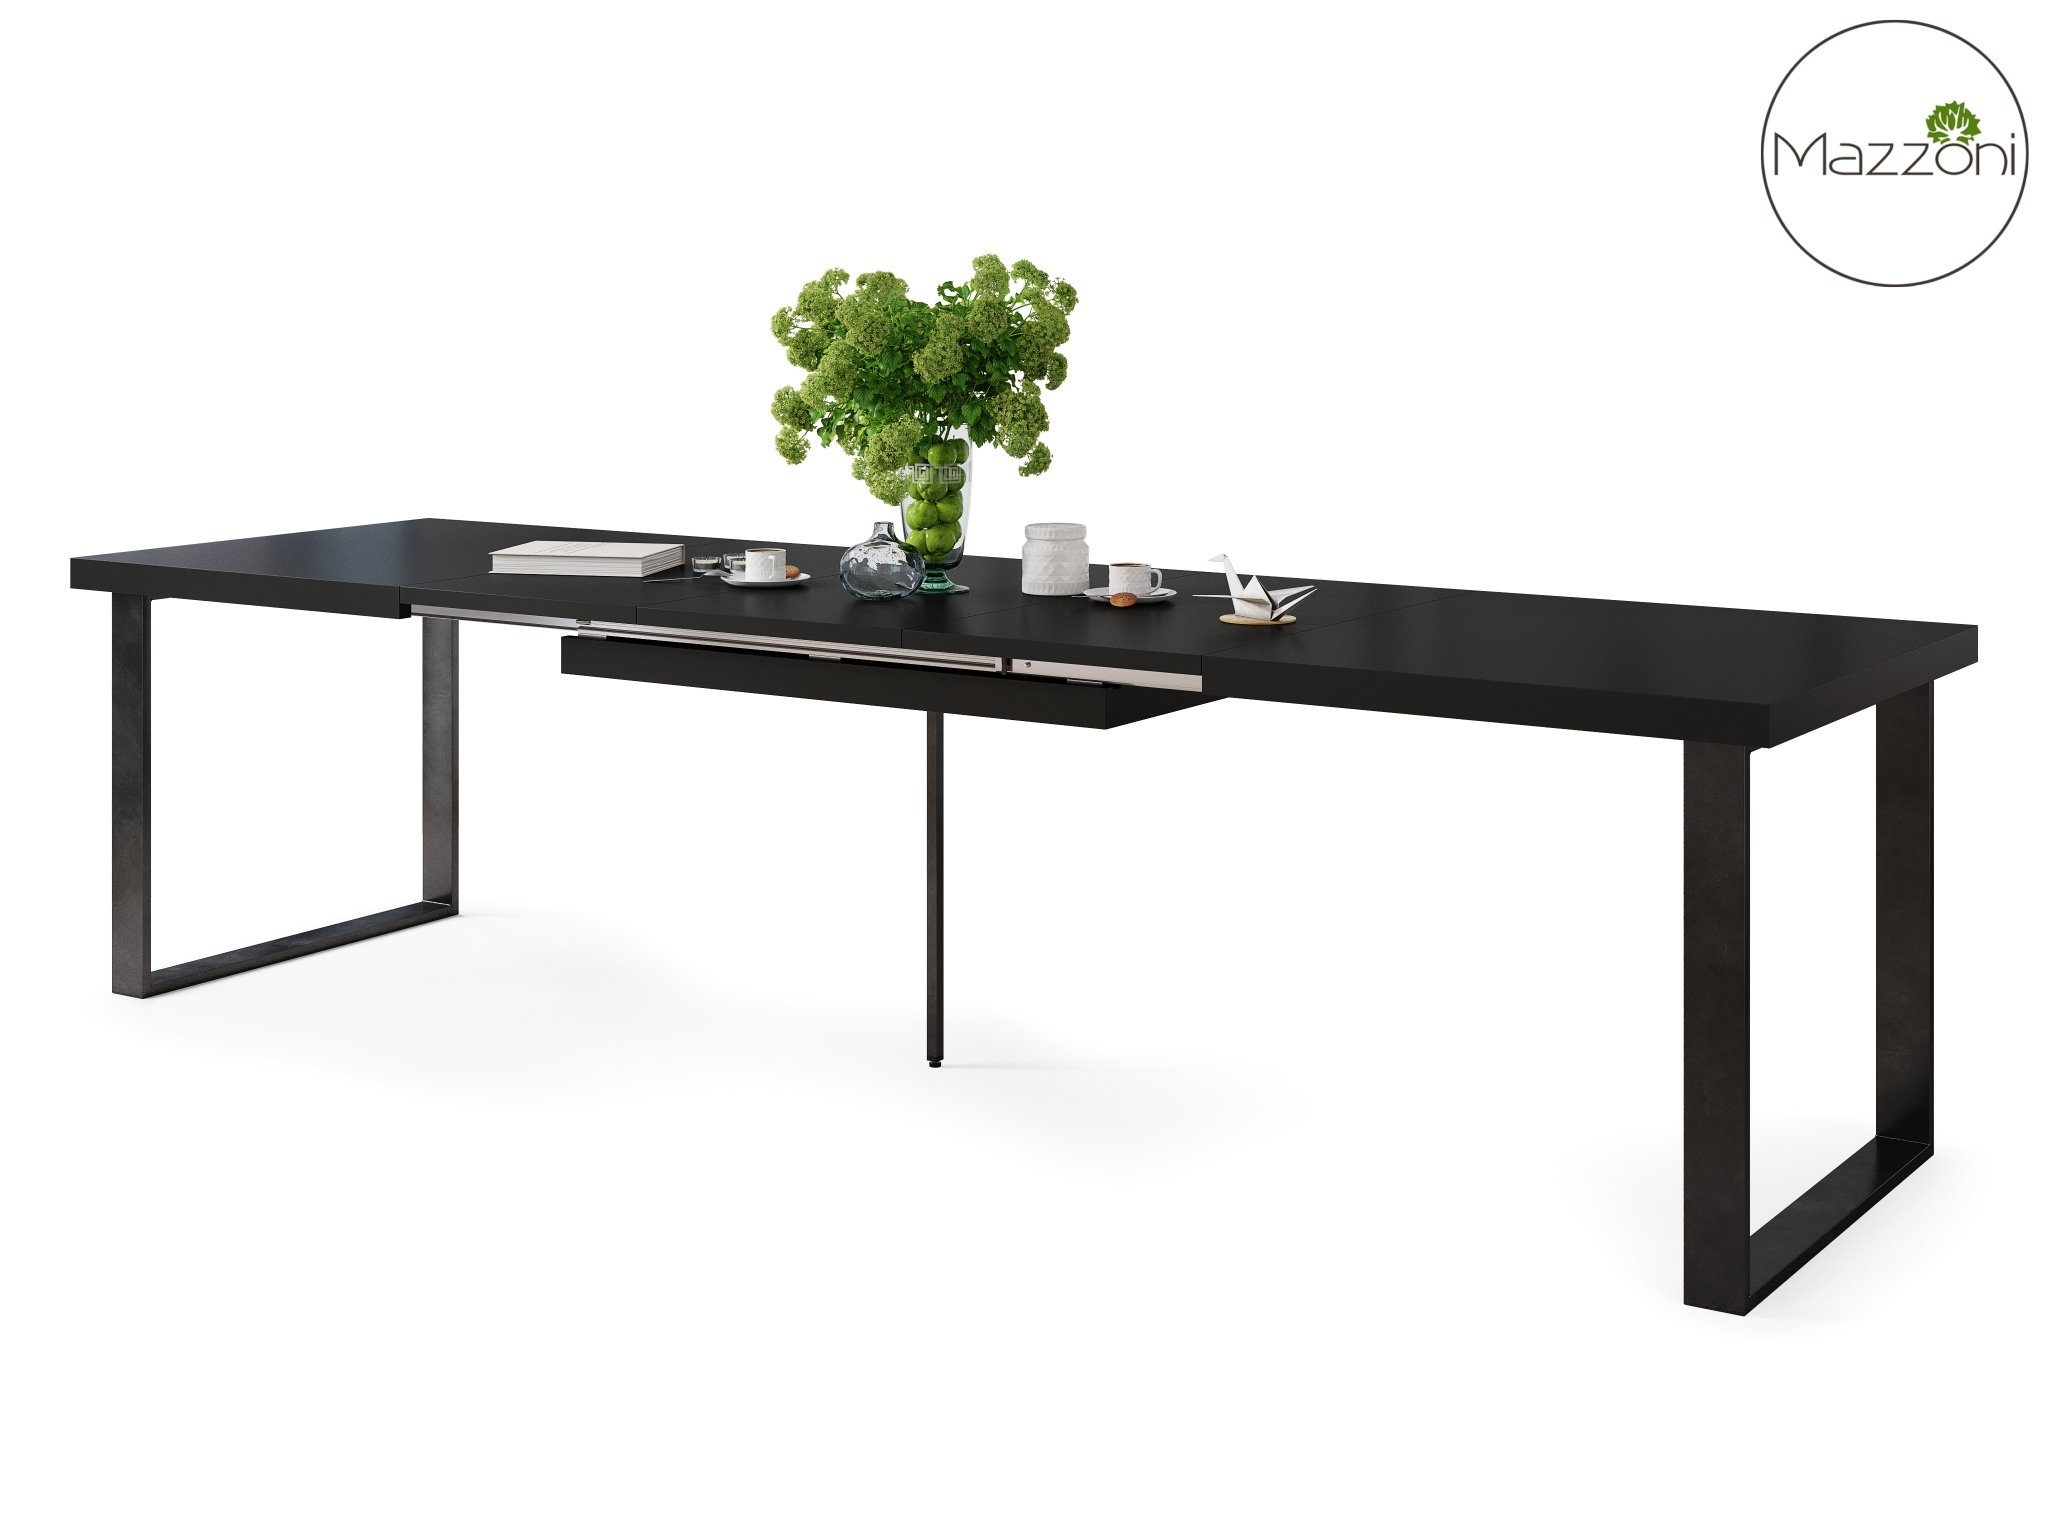 ausziehbar Eiche matt Design - Avella Mazzoni 310 Schwarz gold Esstisch Esstisch 160 cm Tisch bis